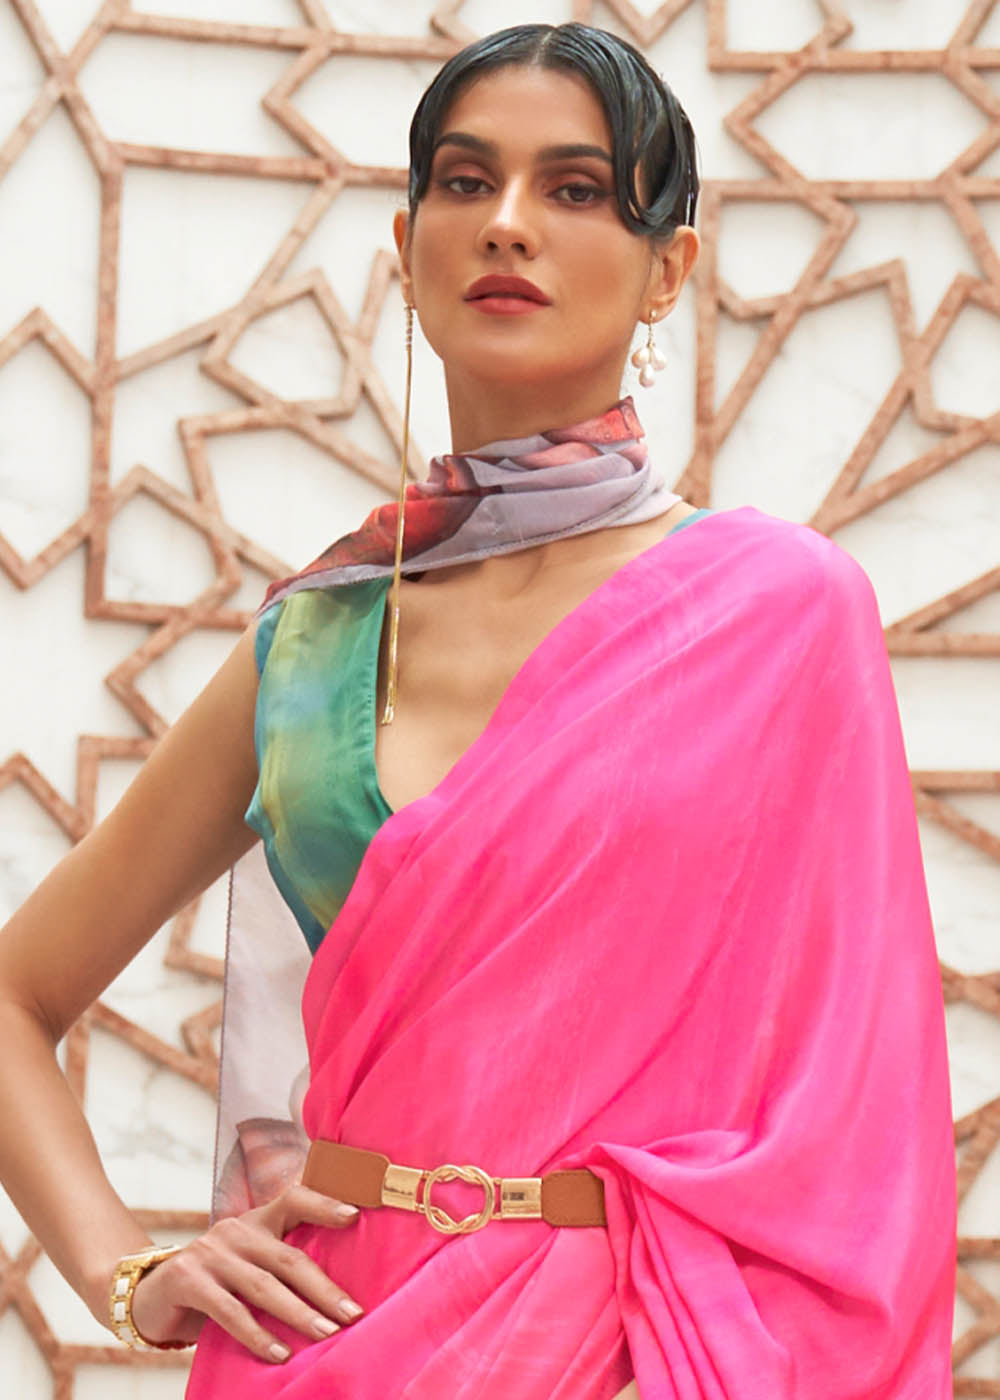 Hot Pink Digital Printed Crepe Silk Saree - Colorful Saree